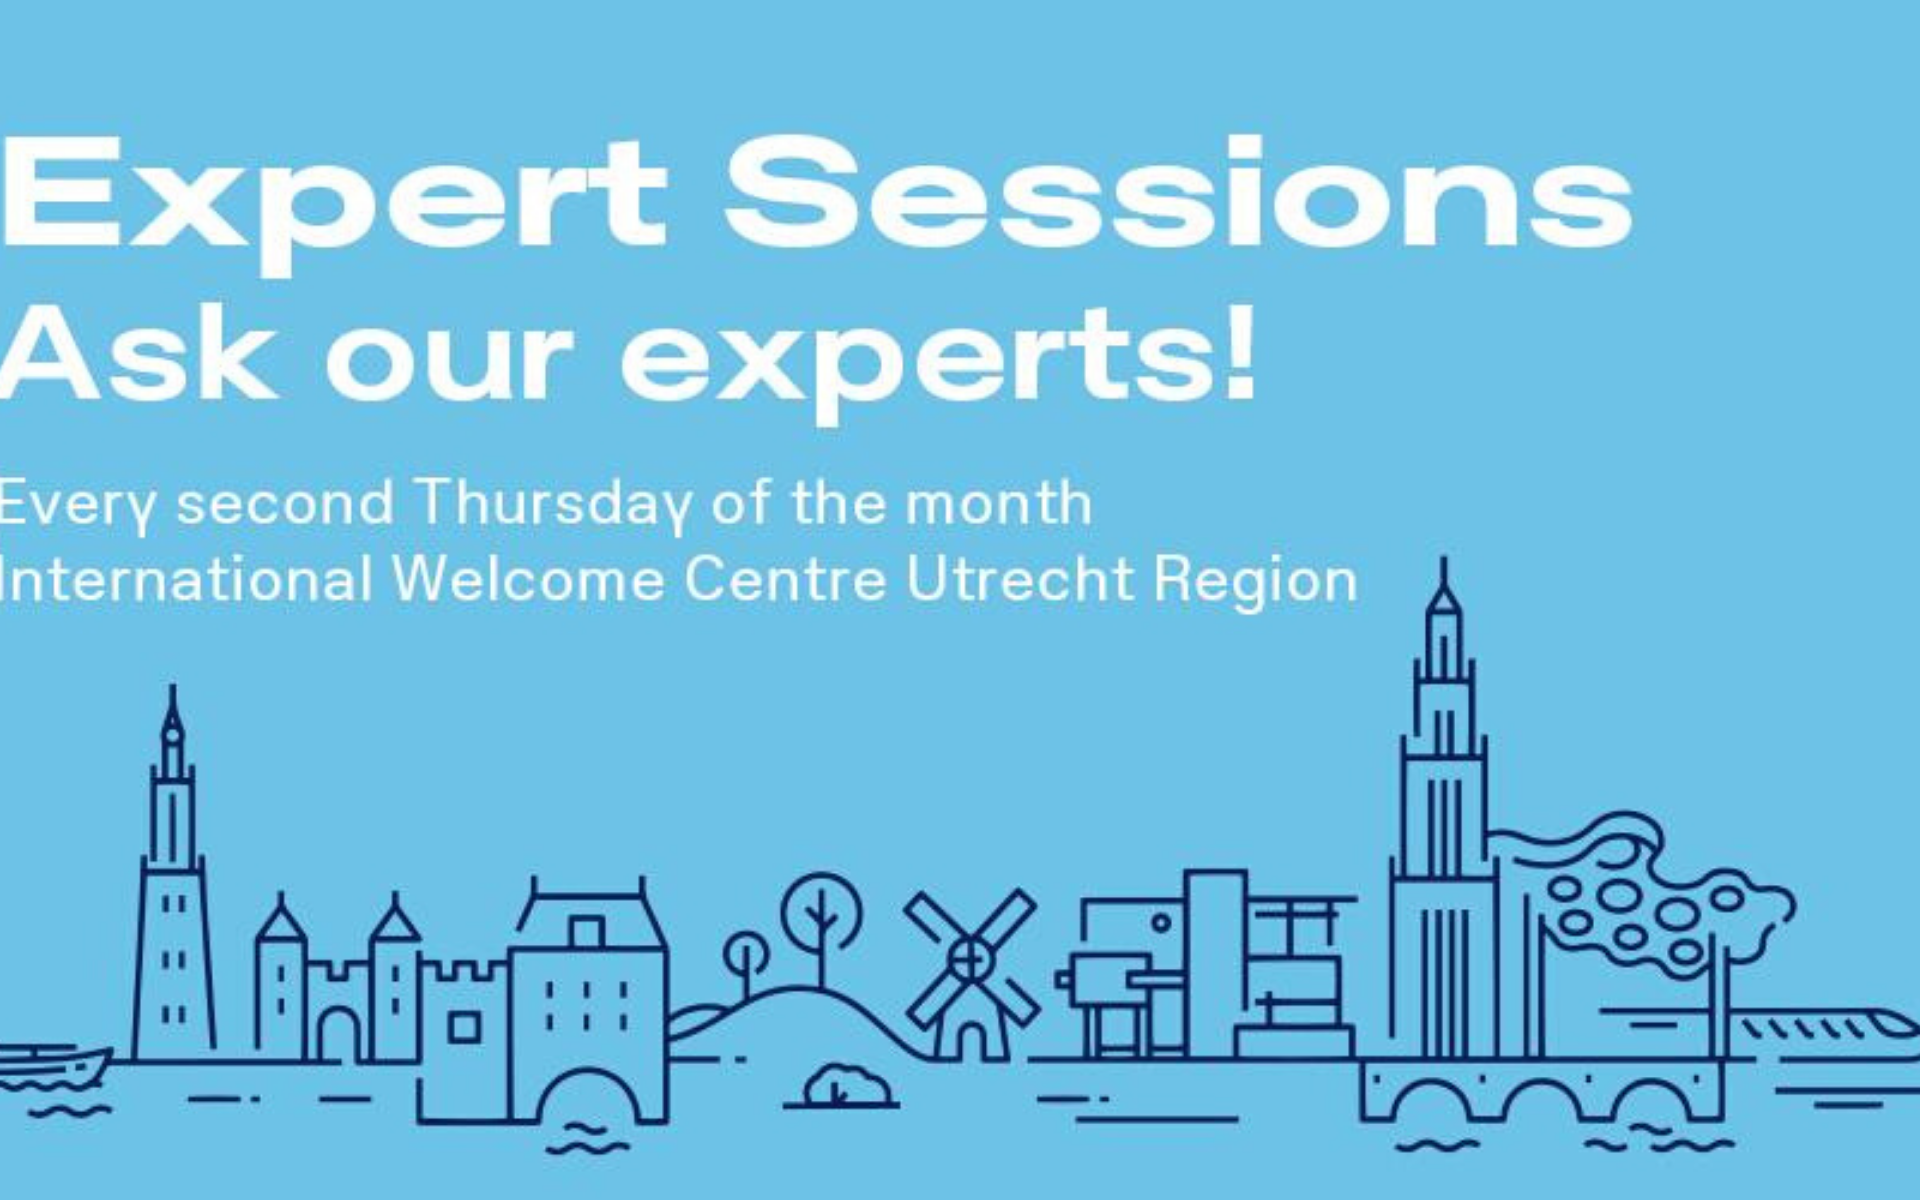 International Welcome Centre Utrecht Region-March 12 2020